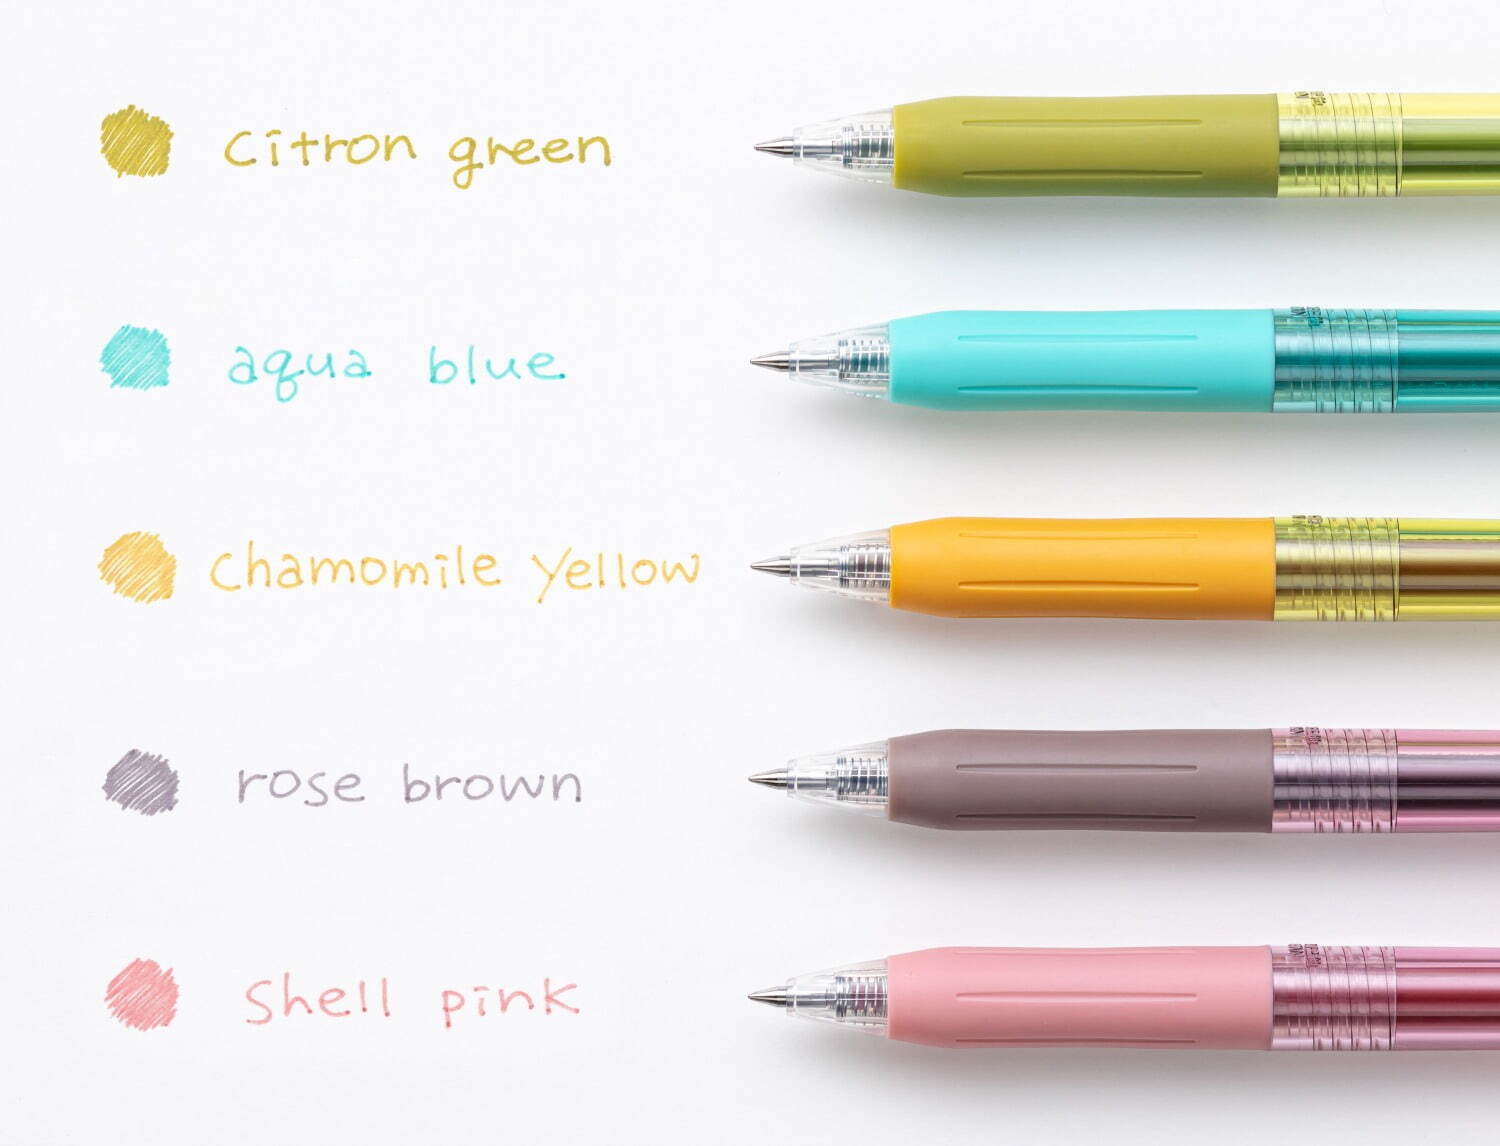 ゼブラ人気ボールペン「サラサクリップ」に限定色、“カモミールや